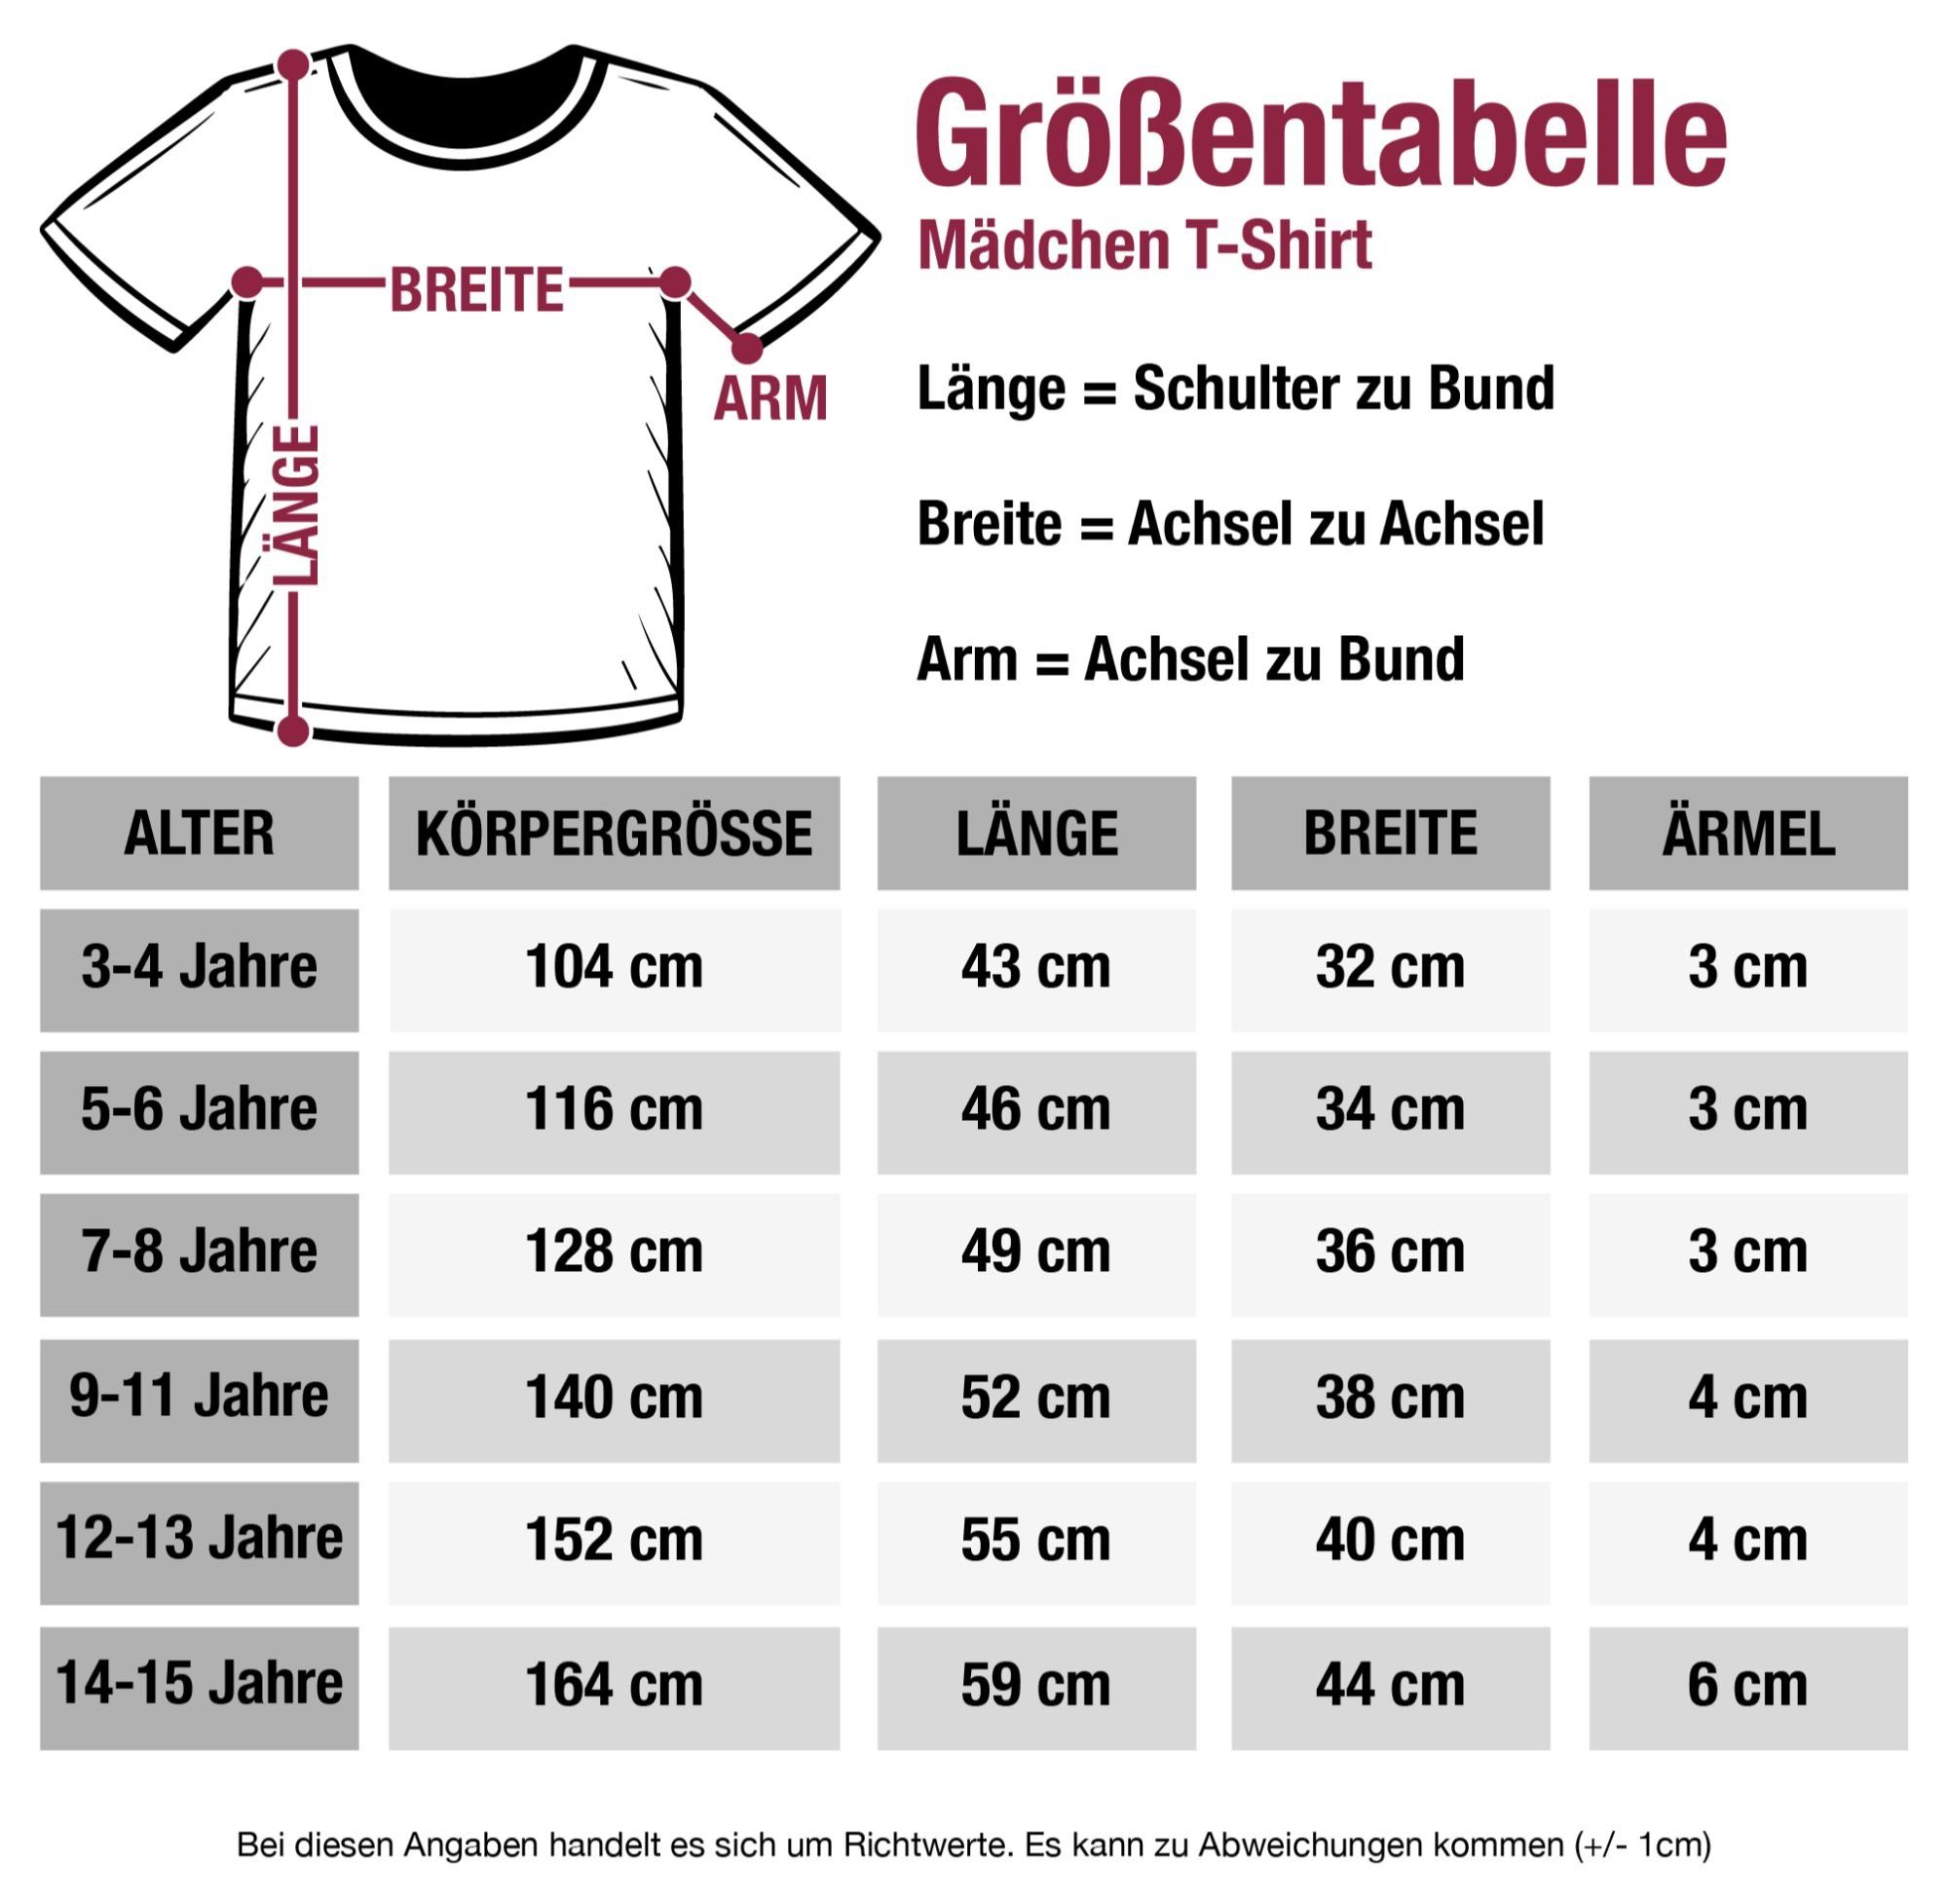 T-Shirt Lebkuchenherz Herzmadl 2 Mode mit Kinder Fuchsia Shirtracer Outfit für Oktoberfest